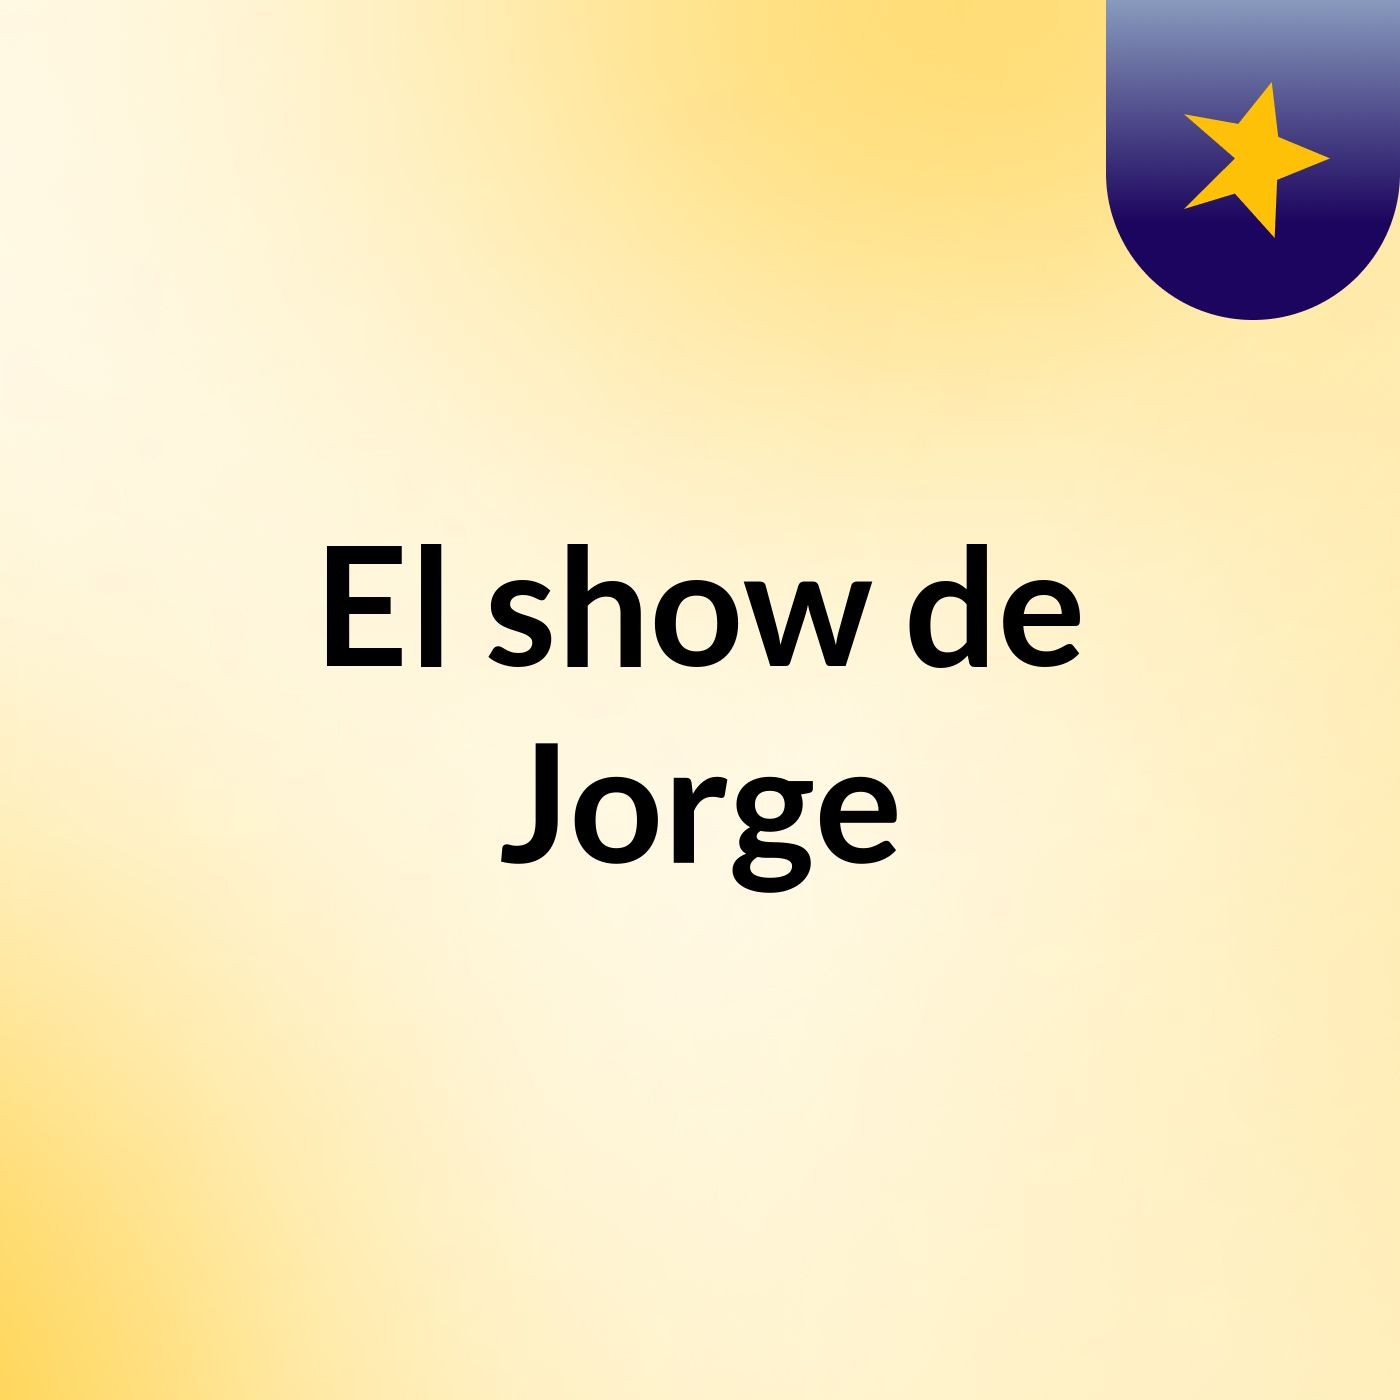 El show de Jorge